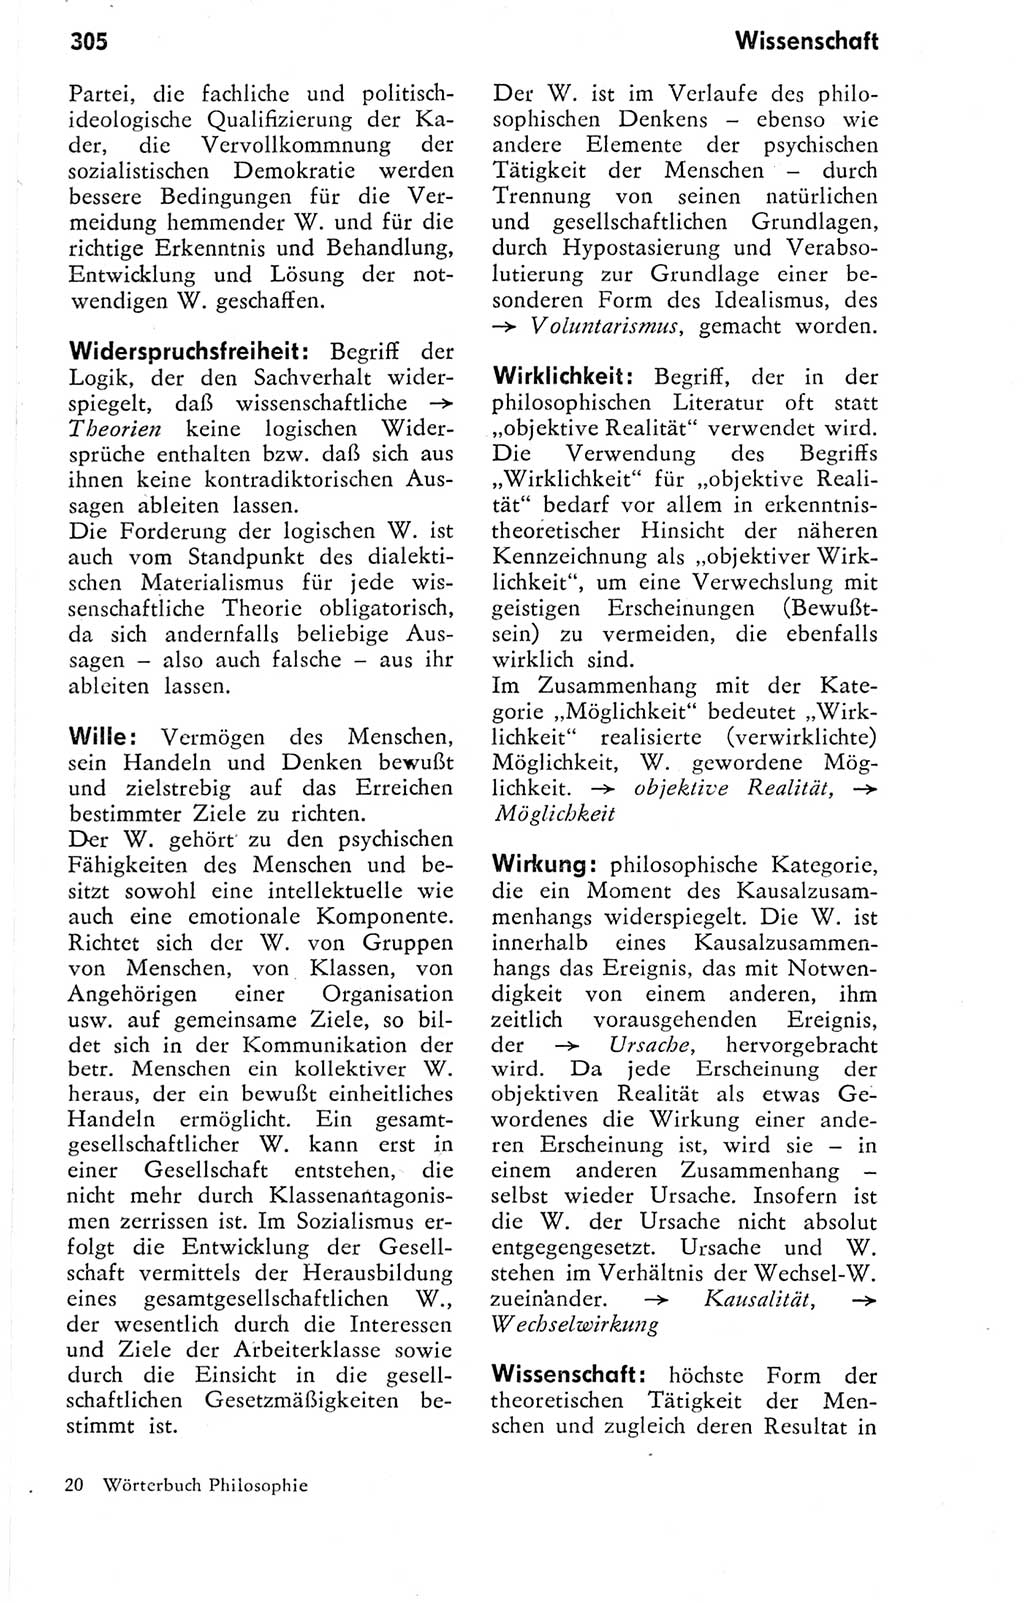 Kleines Wörterbuch der marxistisch-leninistischen Philosophie [Deutsche Demokratische Republik (DDR)] 1974, Seite 305 (Kl. Wb. ML Phil. DDR 1974, S. 305)